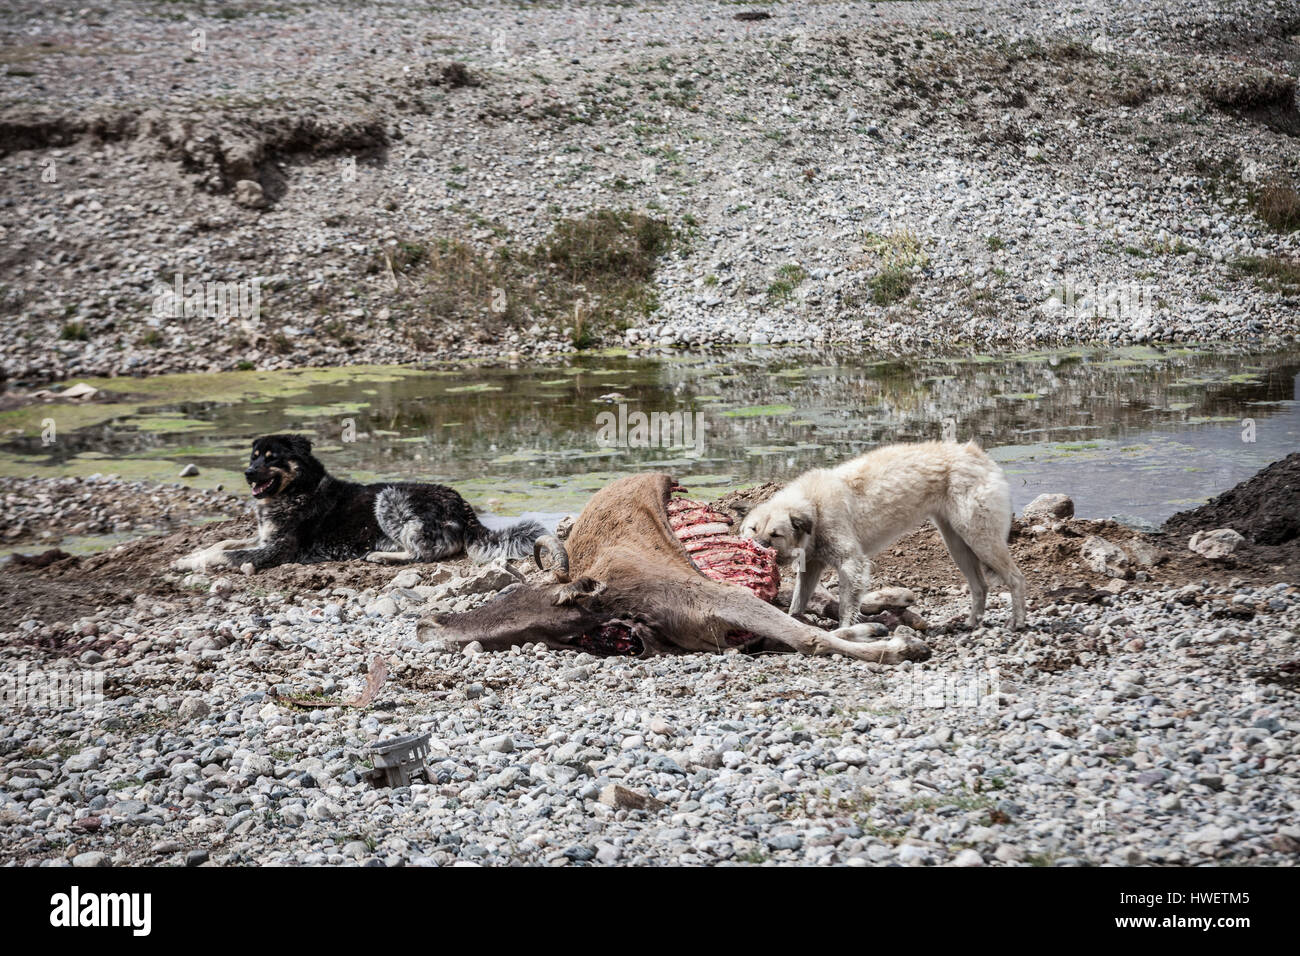 Tayikistán, un perro comiendo carne de cadáver de una cabra, otro perro sentado cerca. Foto de stock